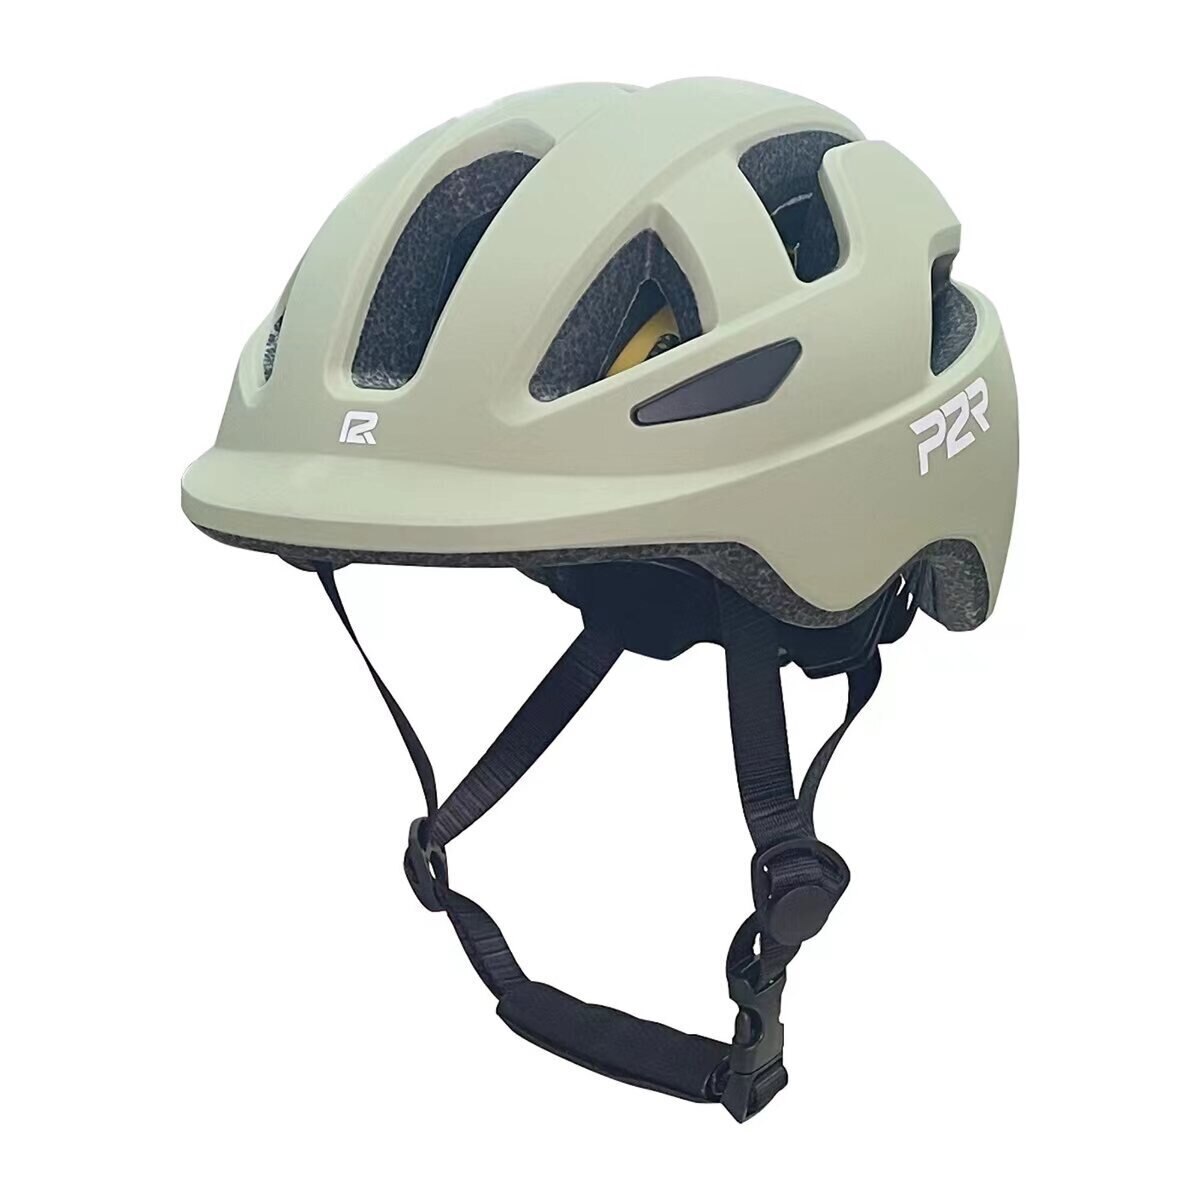 P2R MIPS搭載 自転車用インモールドヘルメット 子供用 モスグリーン